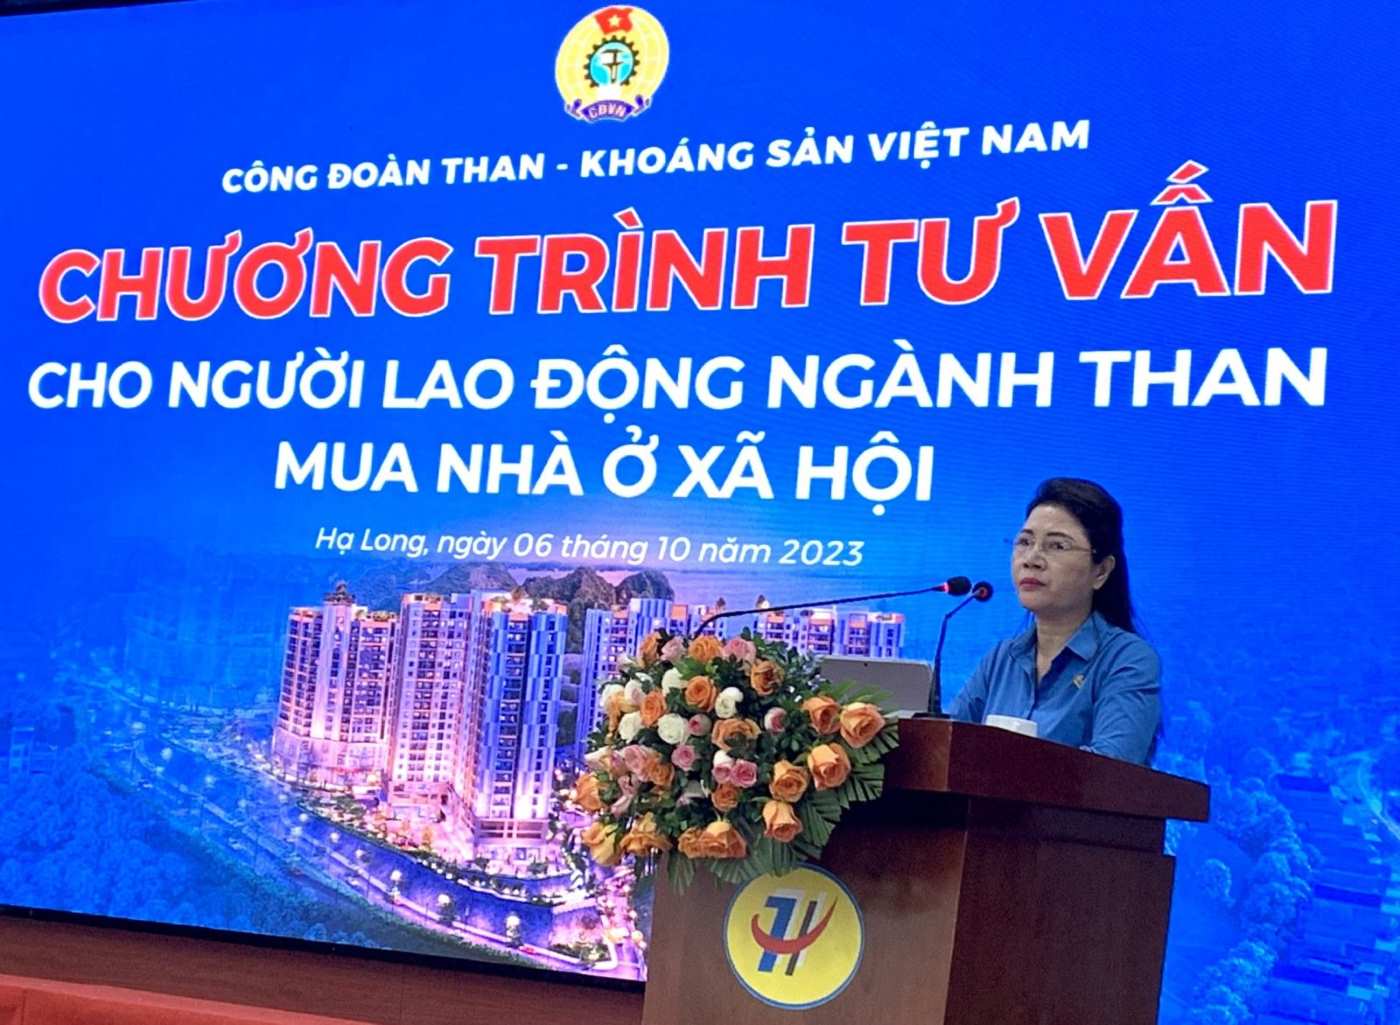 Bà Nguyễn Thị Minh - Phó Chủ tịch Công đoàn TKV - tại Chương trình Tư vấn cho NLĐ ngành Than mua nhà ở xã hội. Ảnh: Truyền thông TKV 